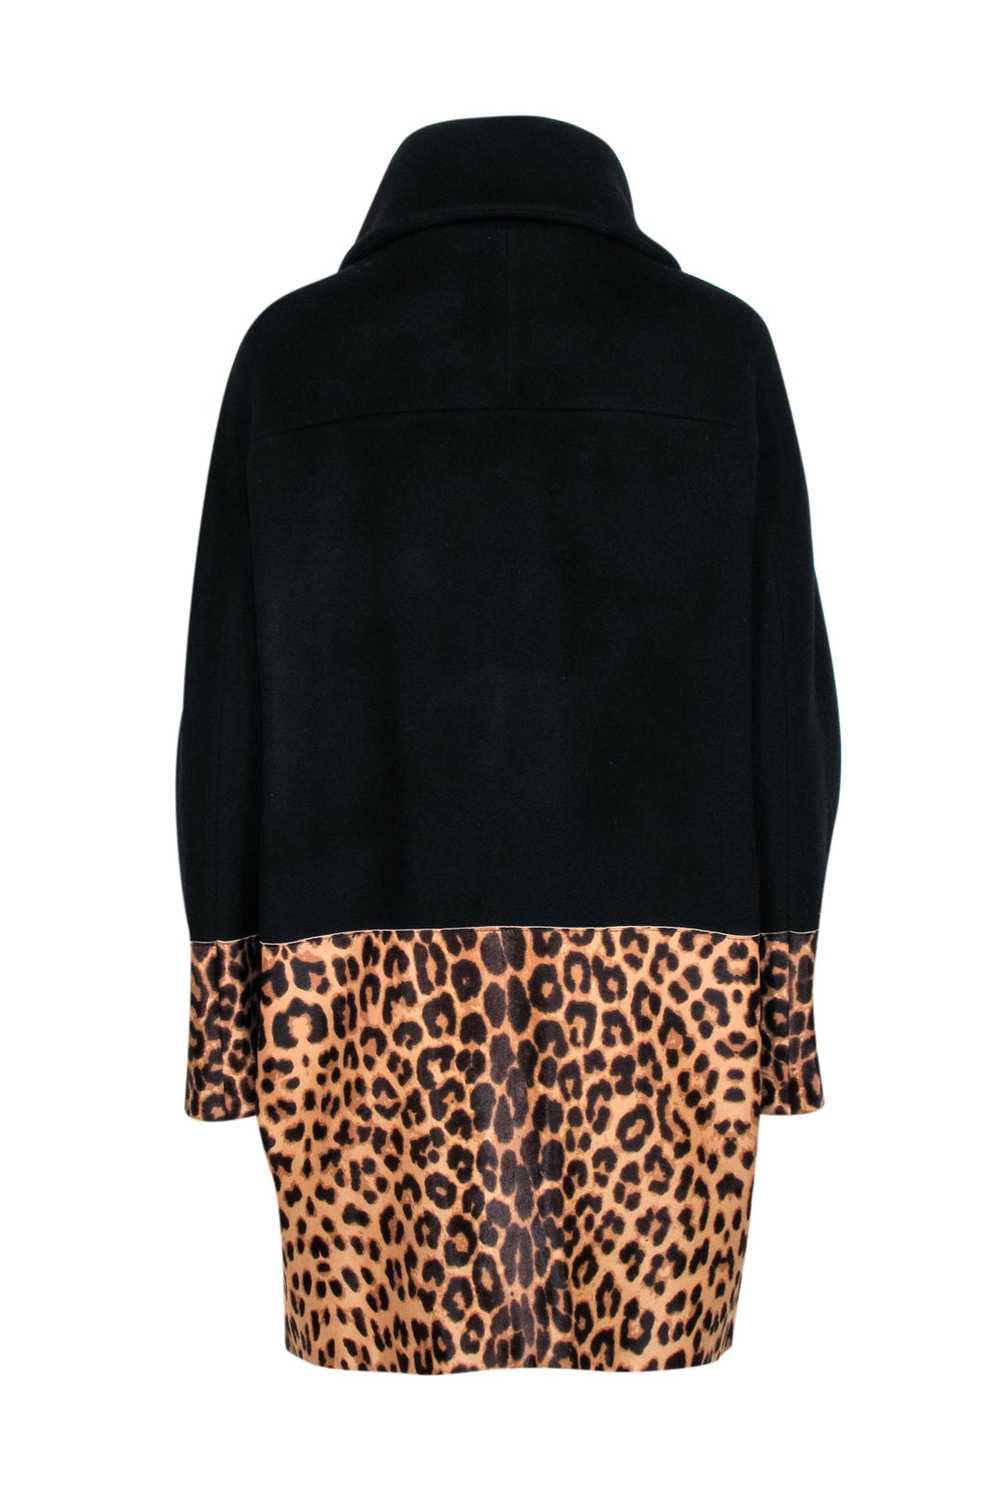 Elie Tahari - Black & Leopard Print Wool blend Co… - image 3